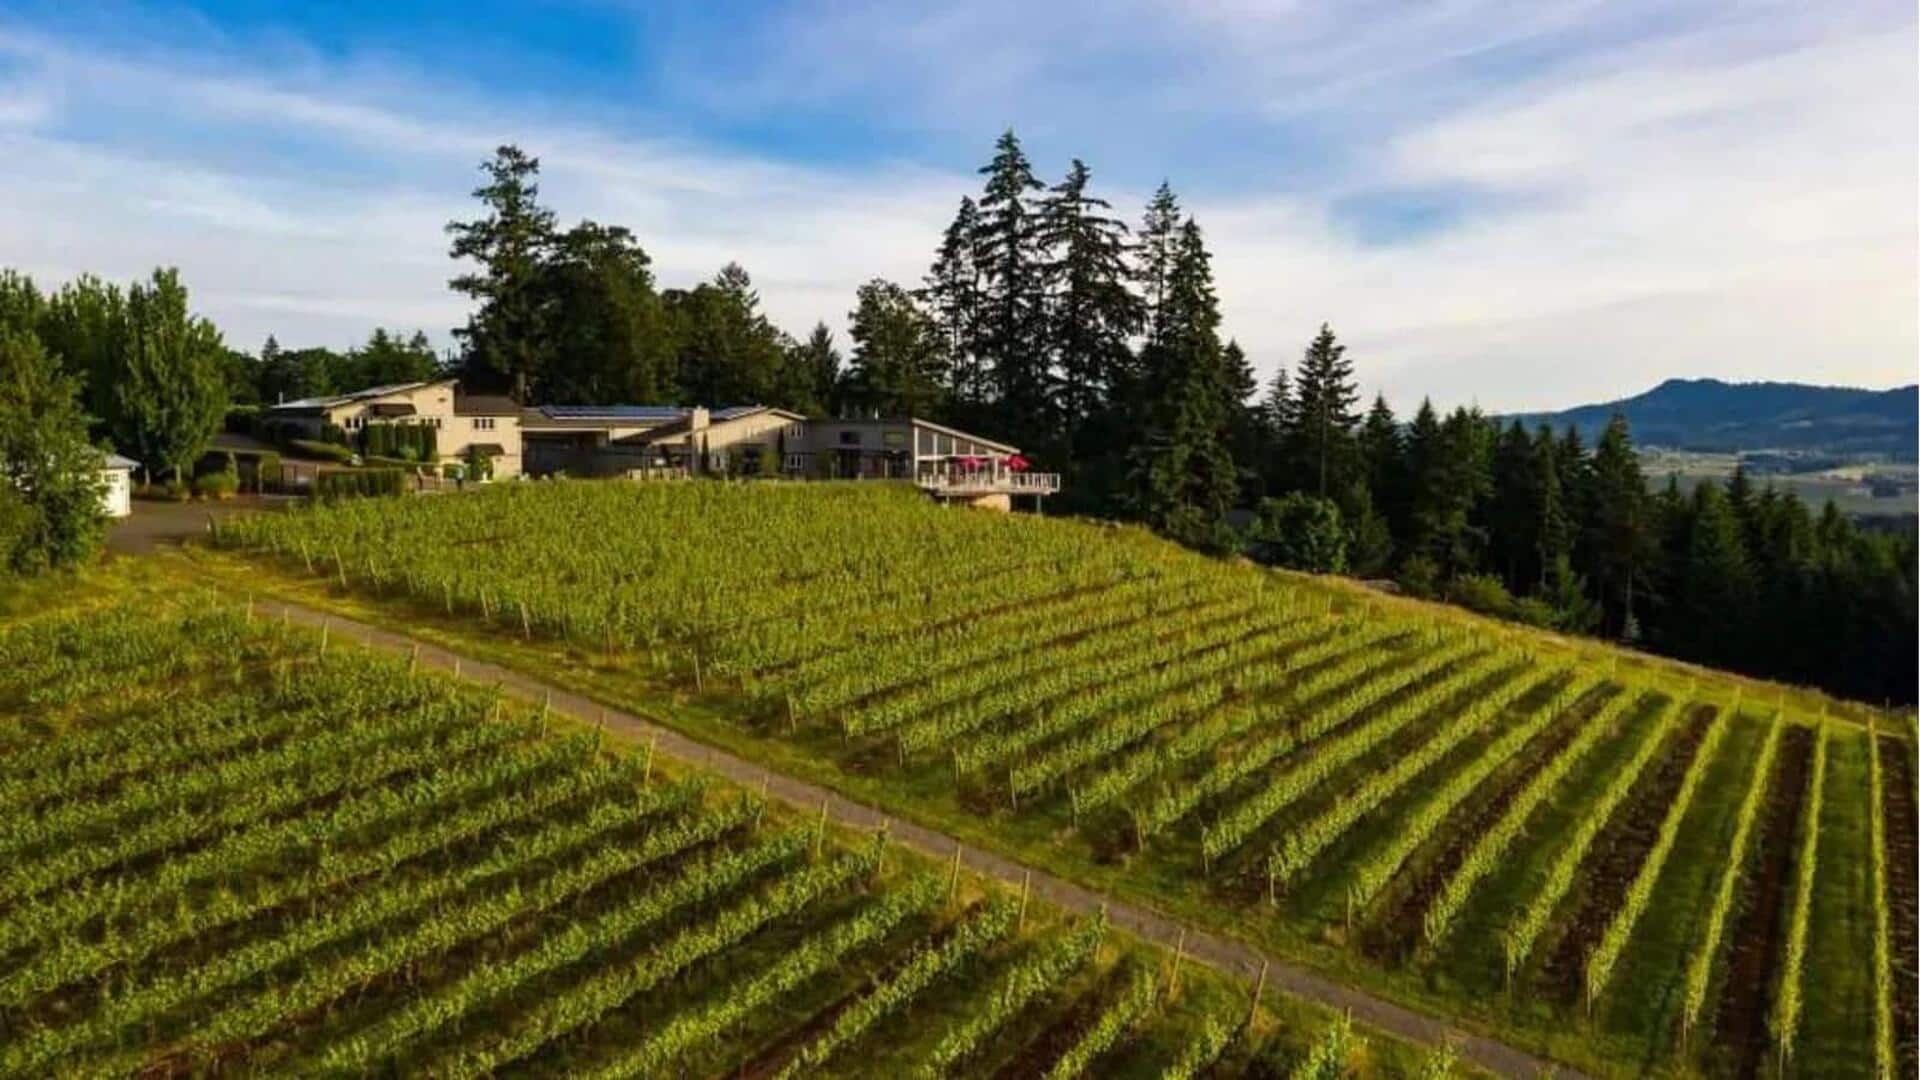 Temukan permata kebun anggur Portland dengan panduan perjalanan ini 